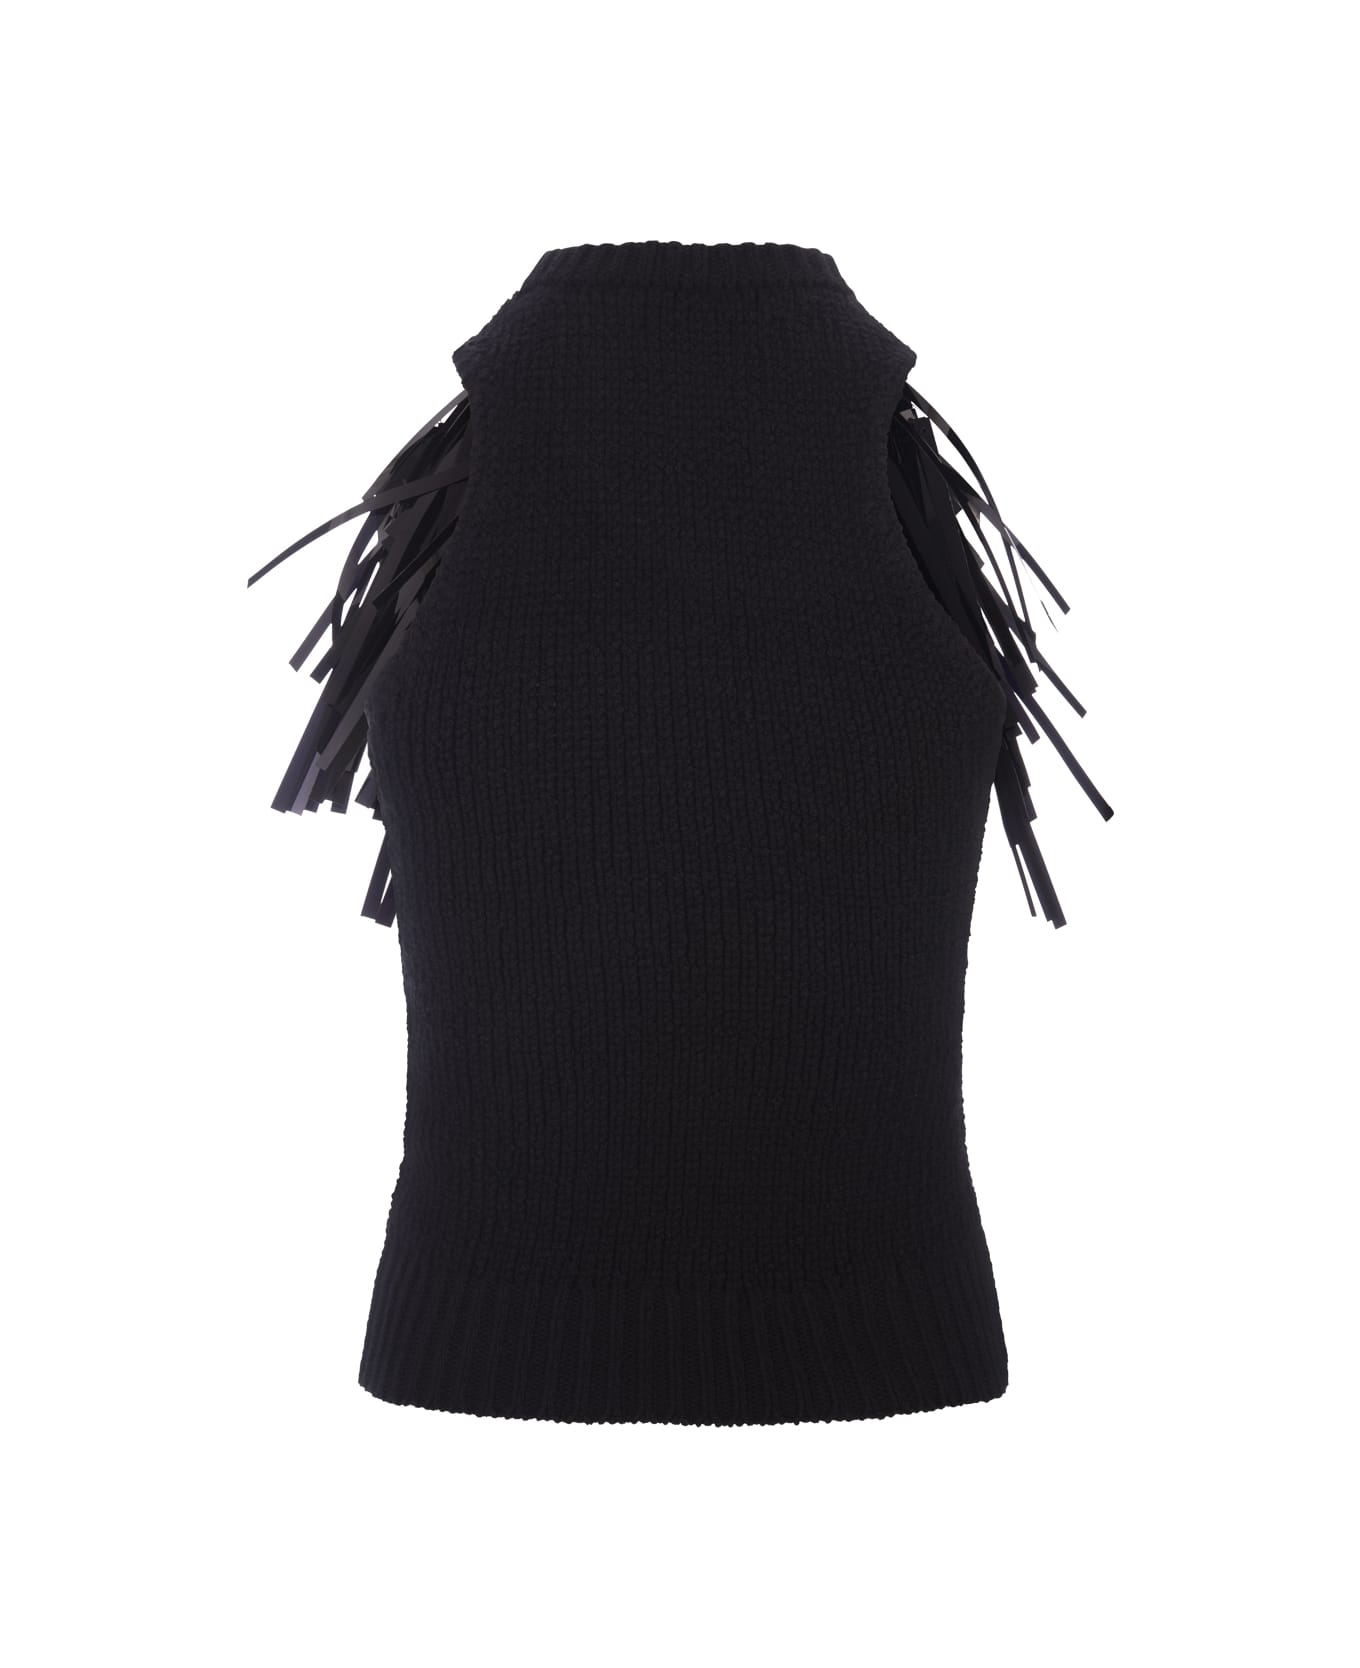 Jil Sander Black Sleeveless Top With Sequin Fringes - Black